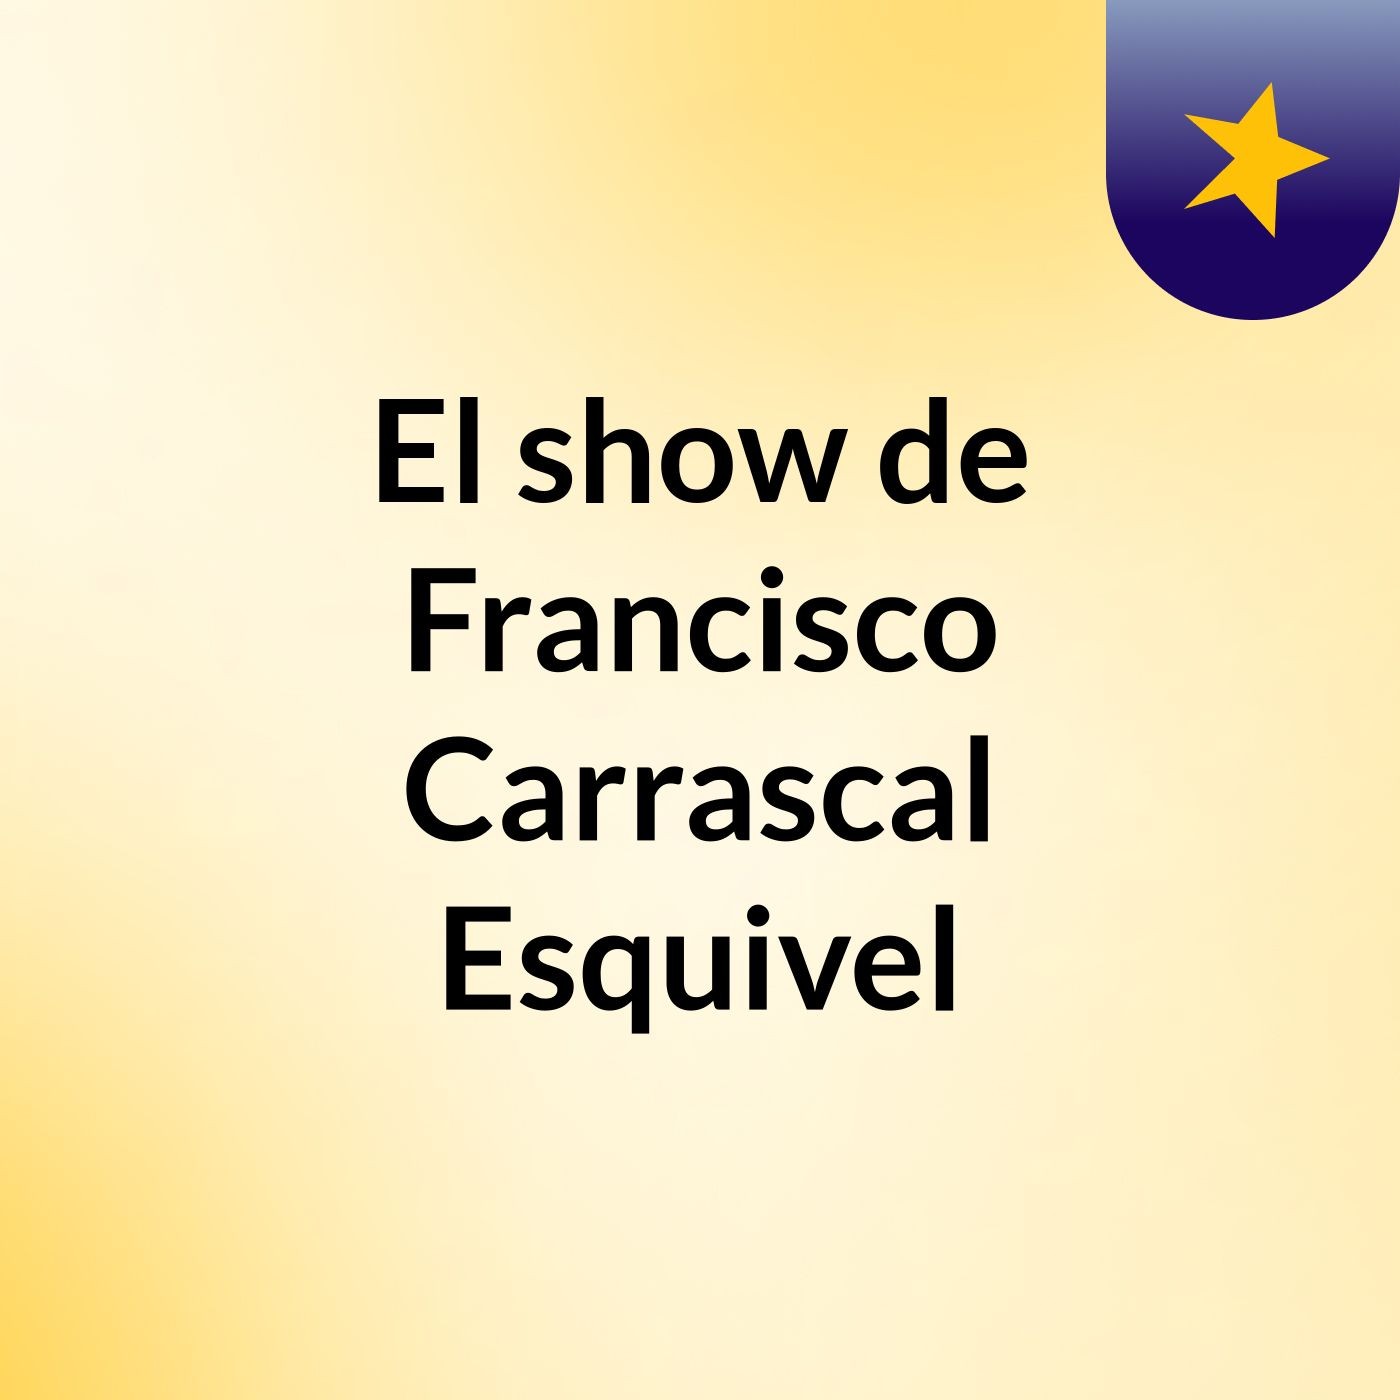 El show de Francisco Carrascal Esquivel